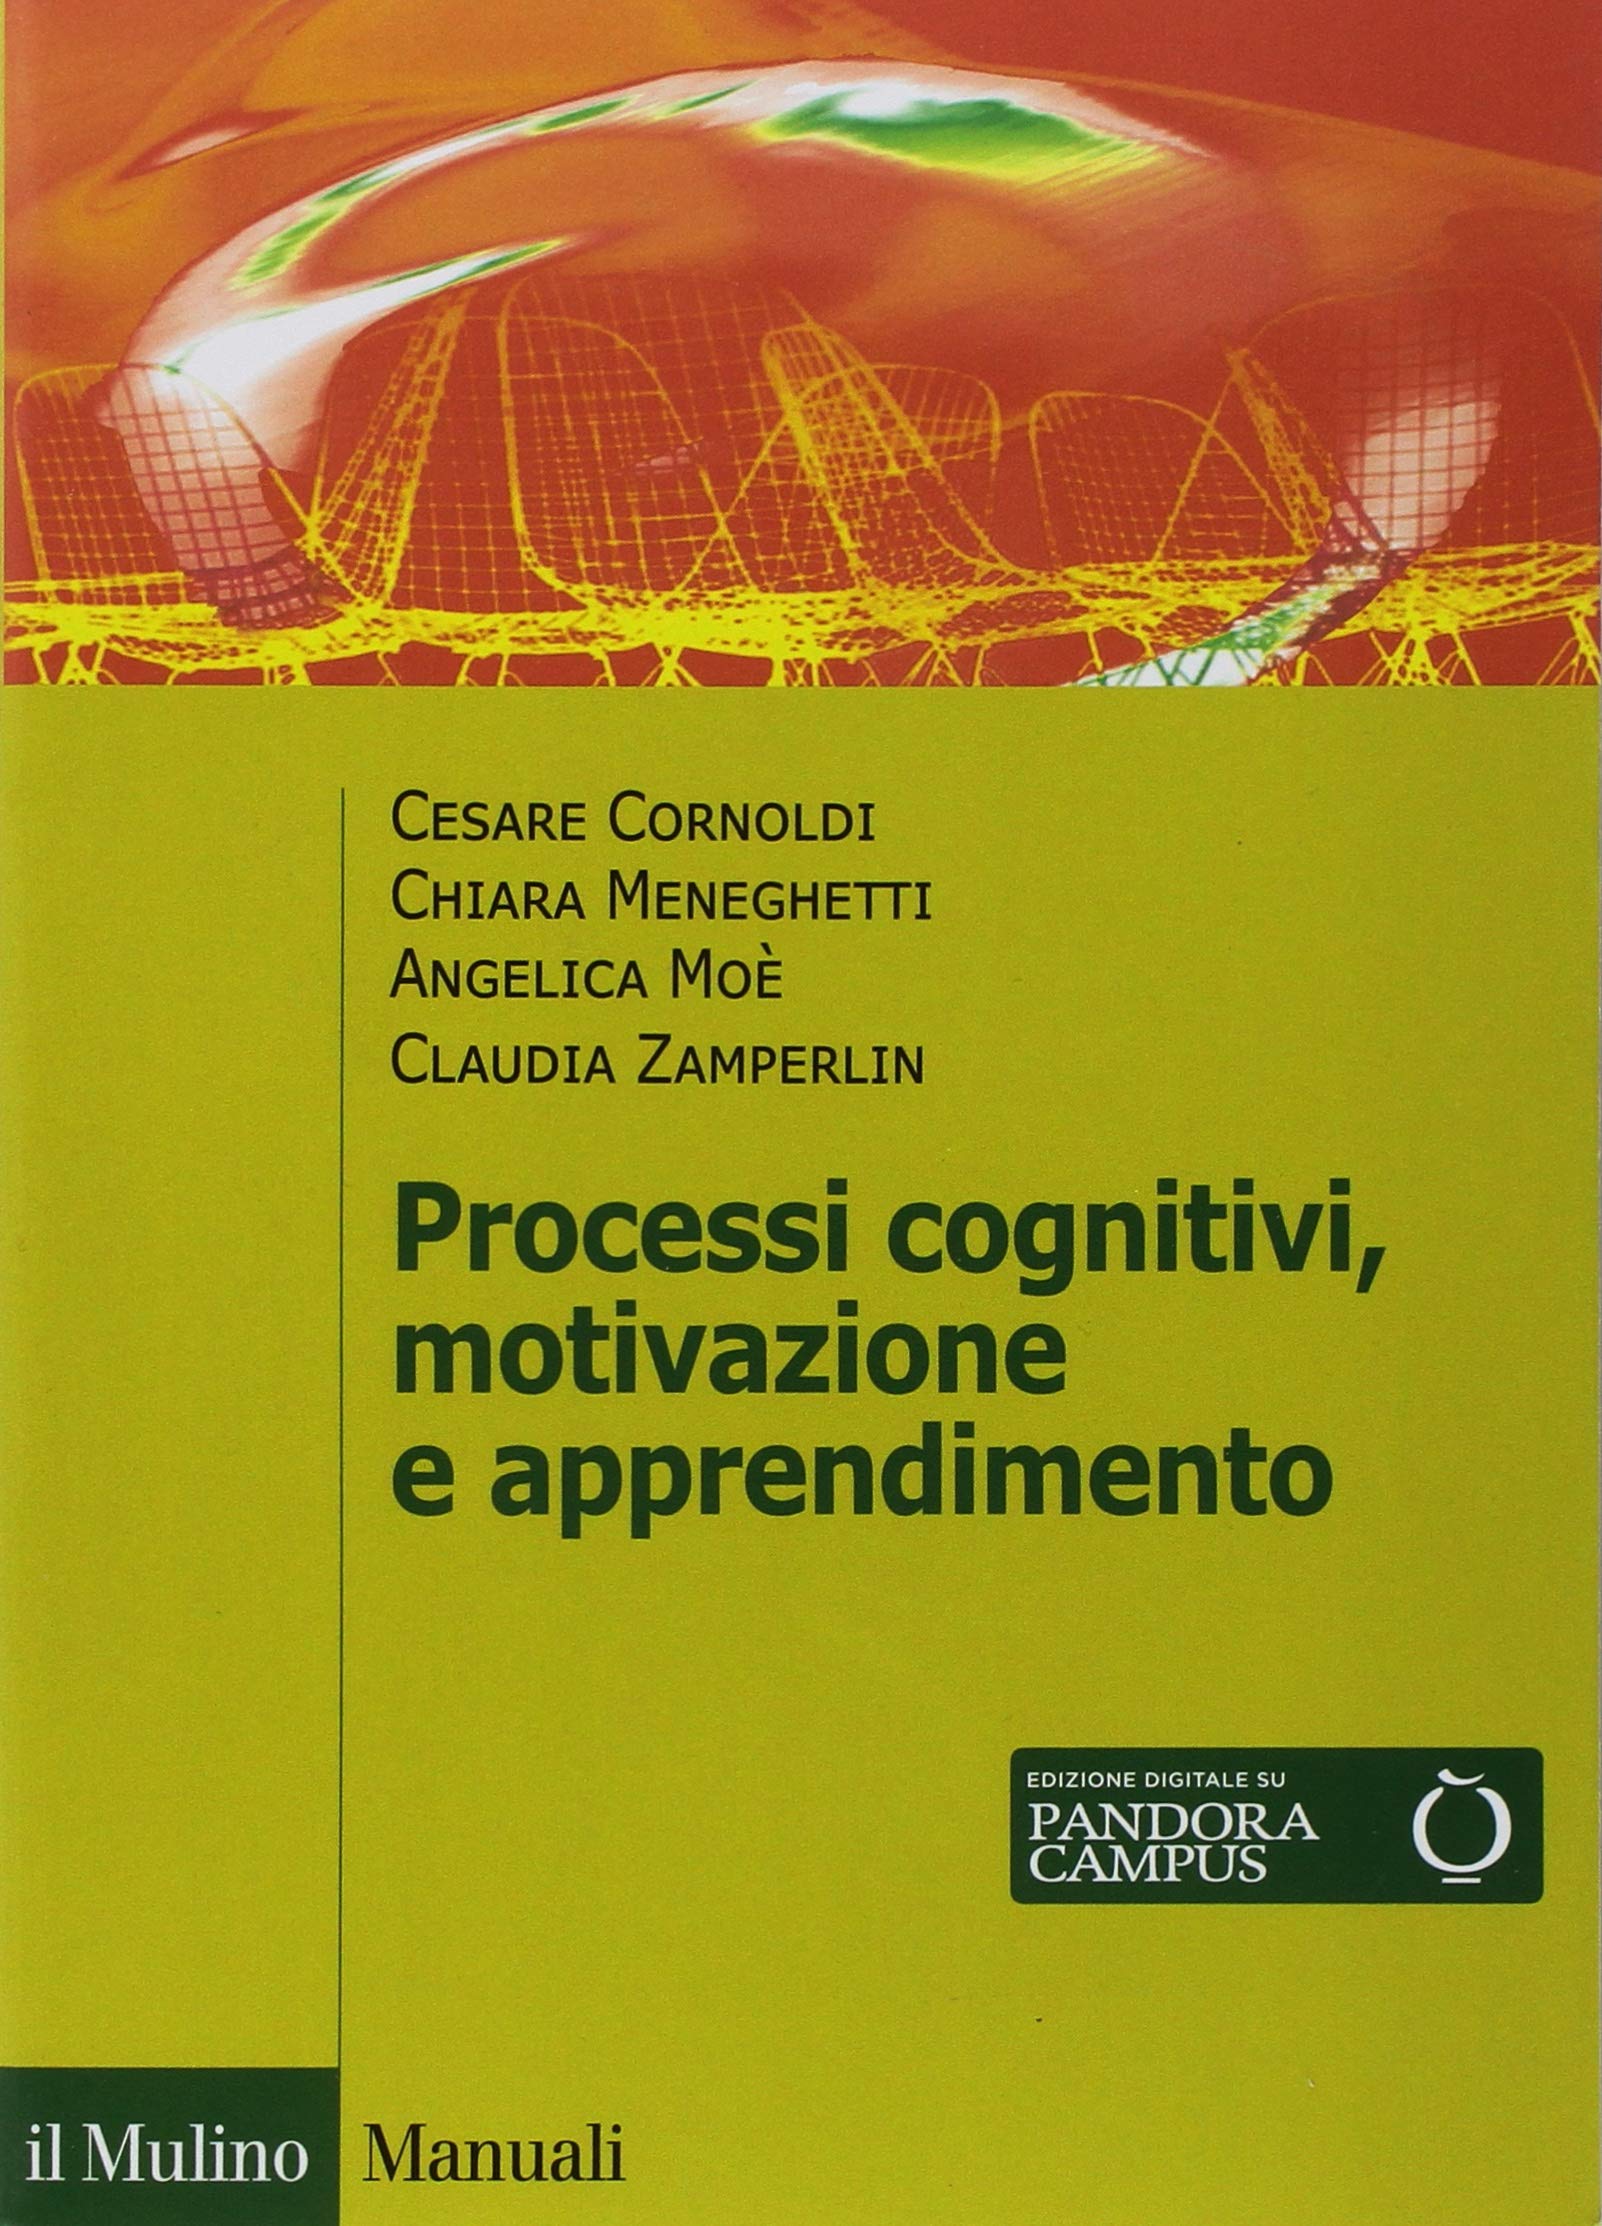 La copertina di Processi cognitivi, motivazione e apprendimento